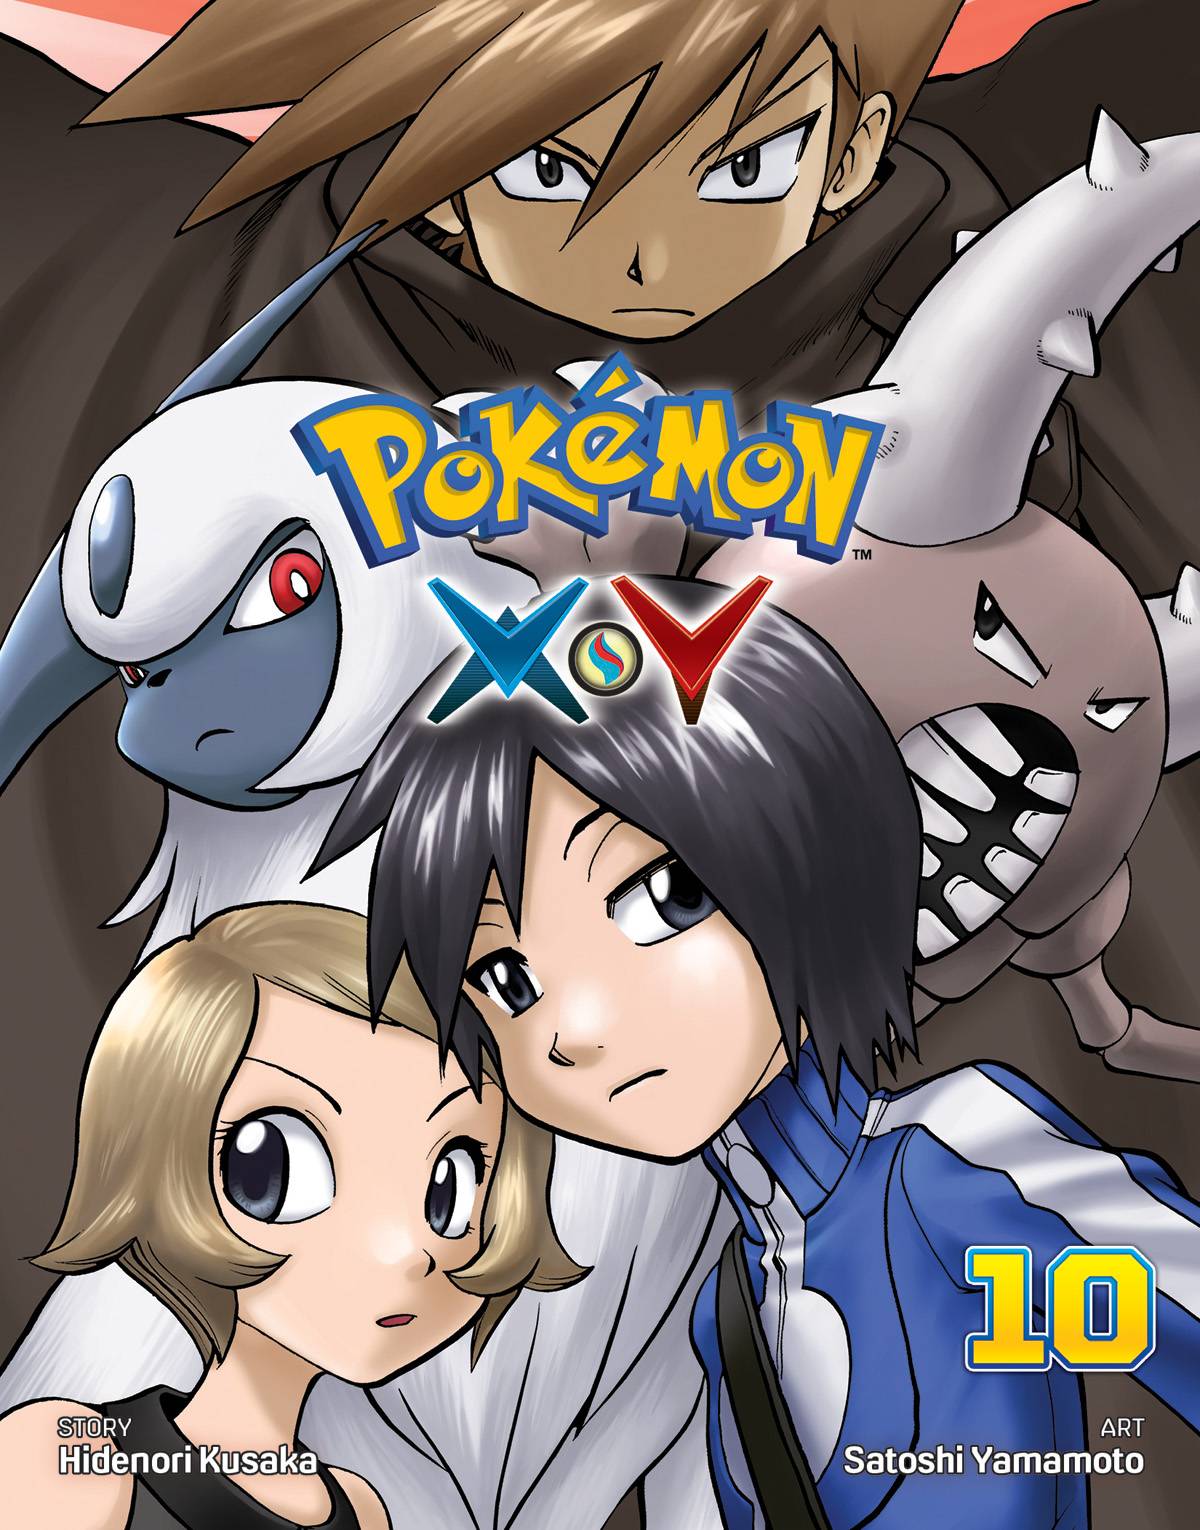 Pokemon Xy Vol. 10